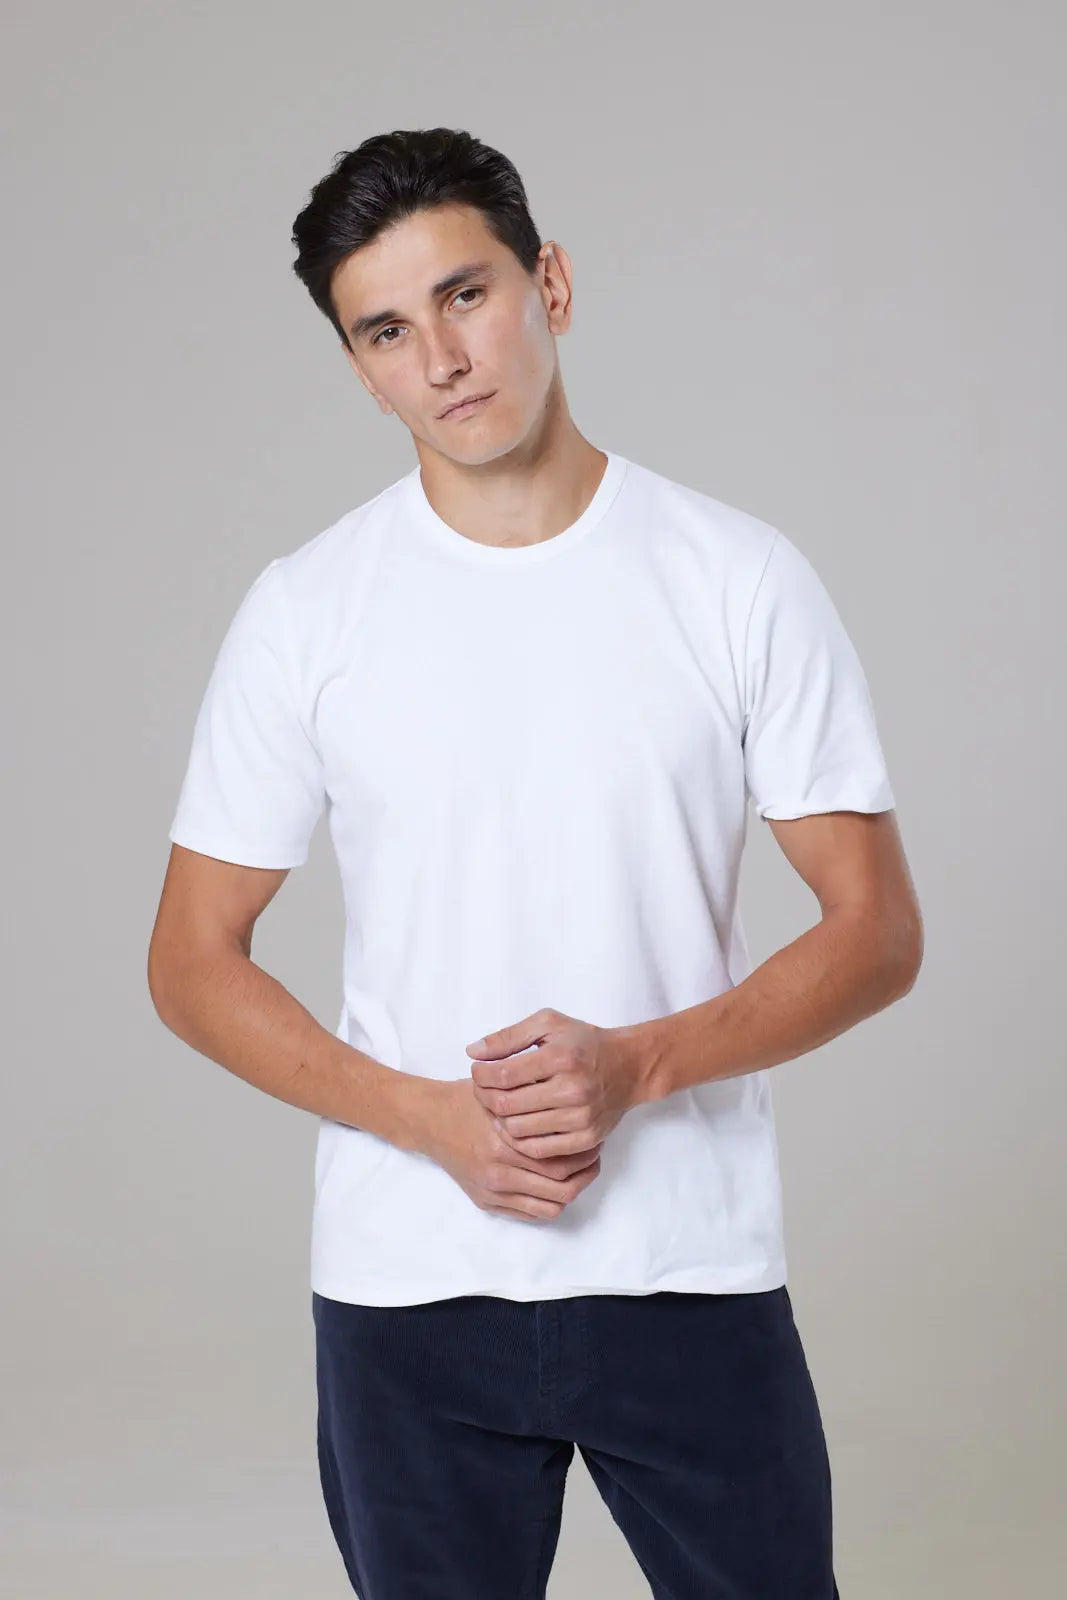 Trueman Short Sleeve Tee Shirt - White